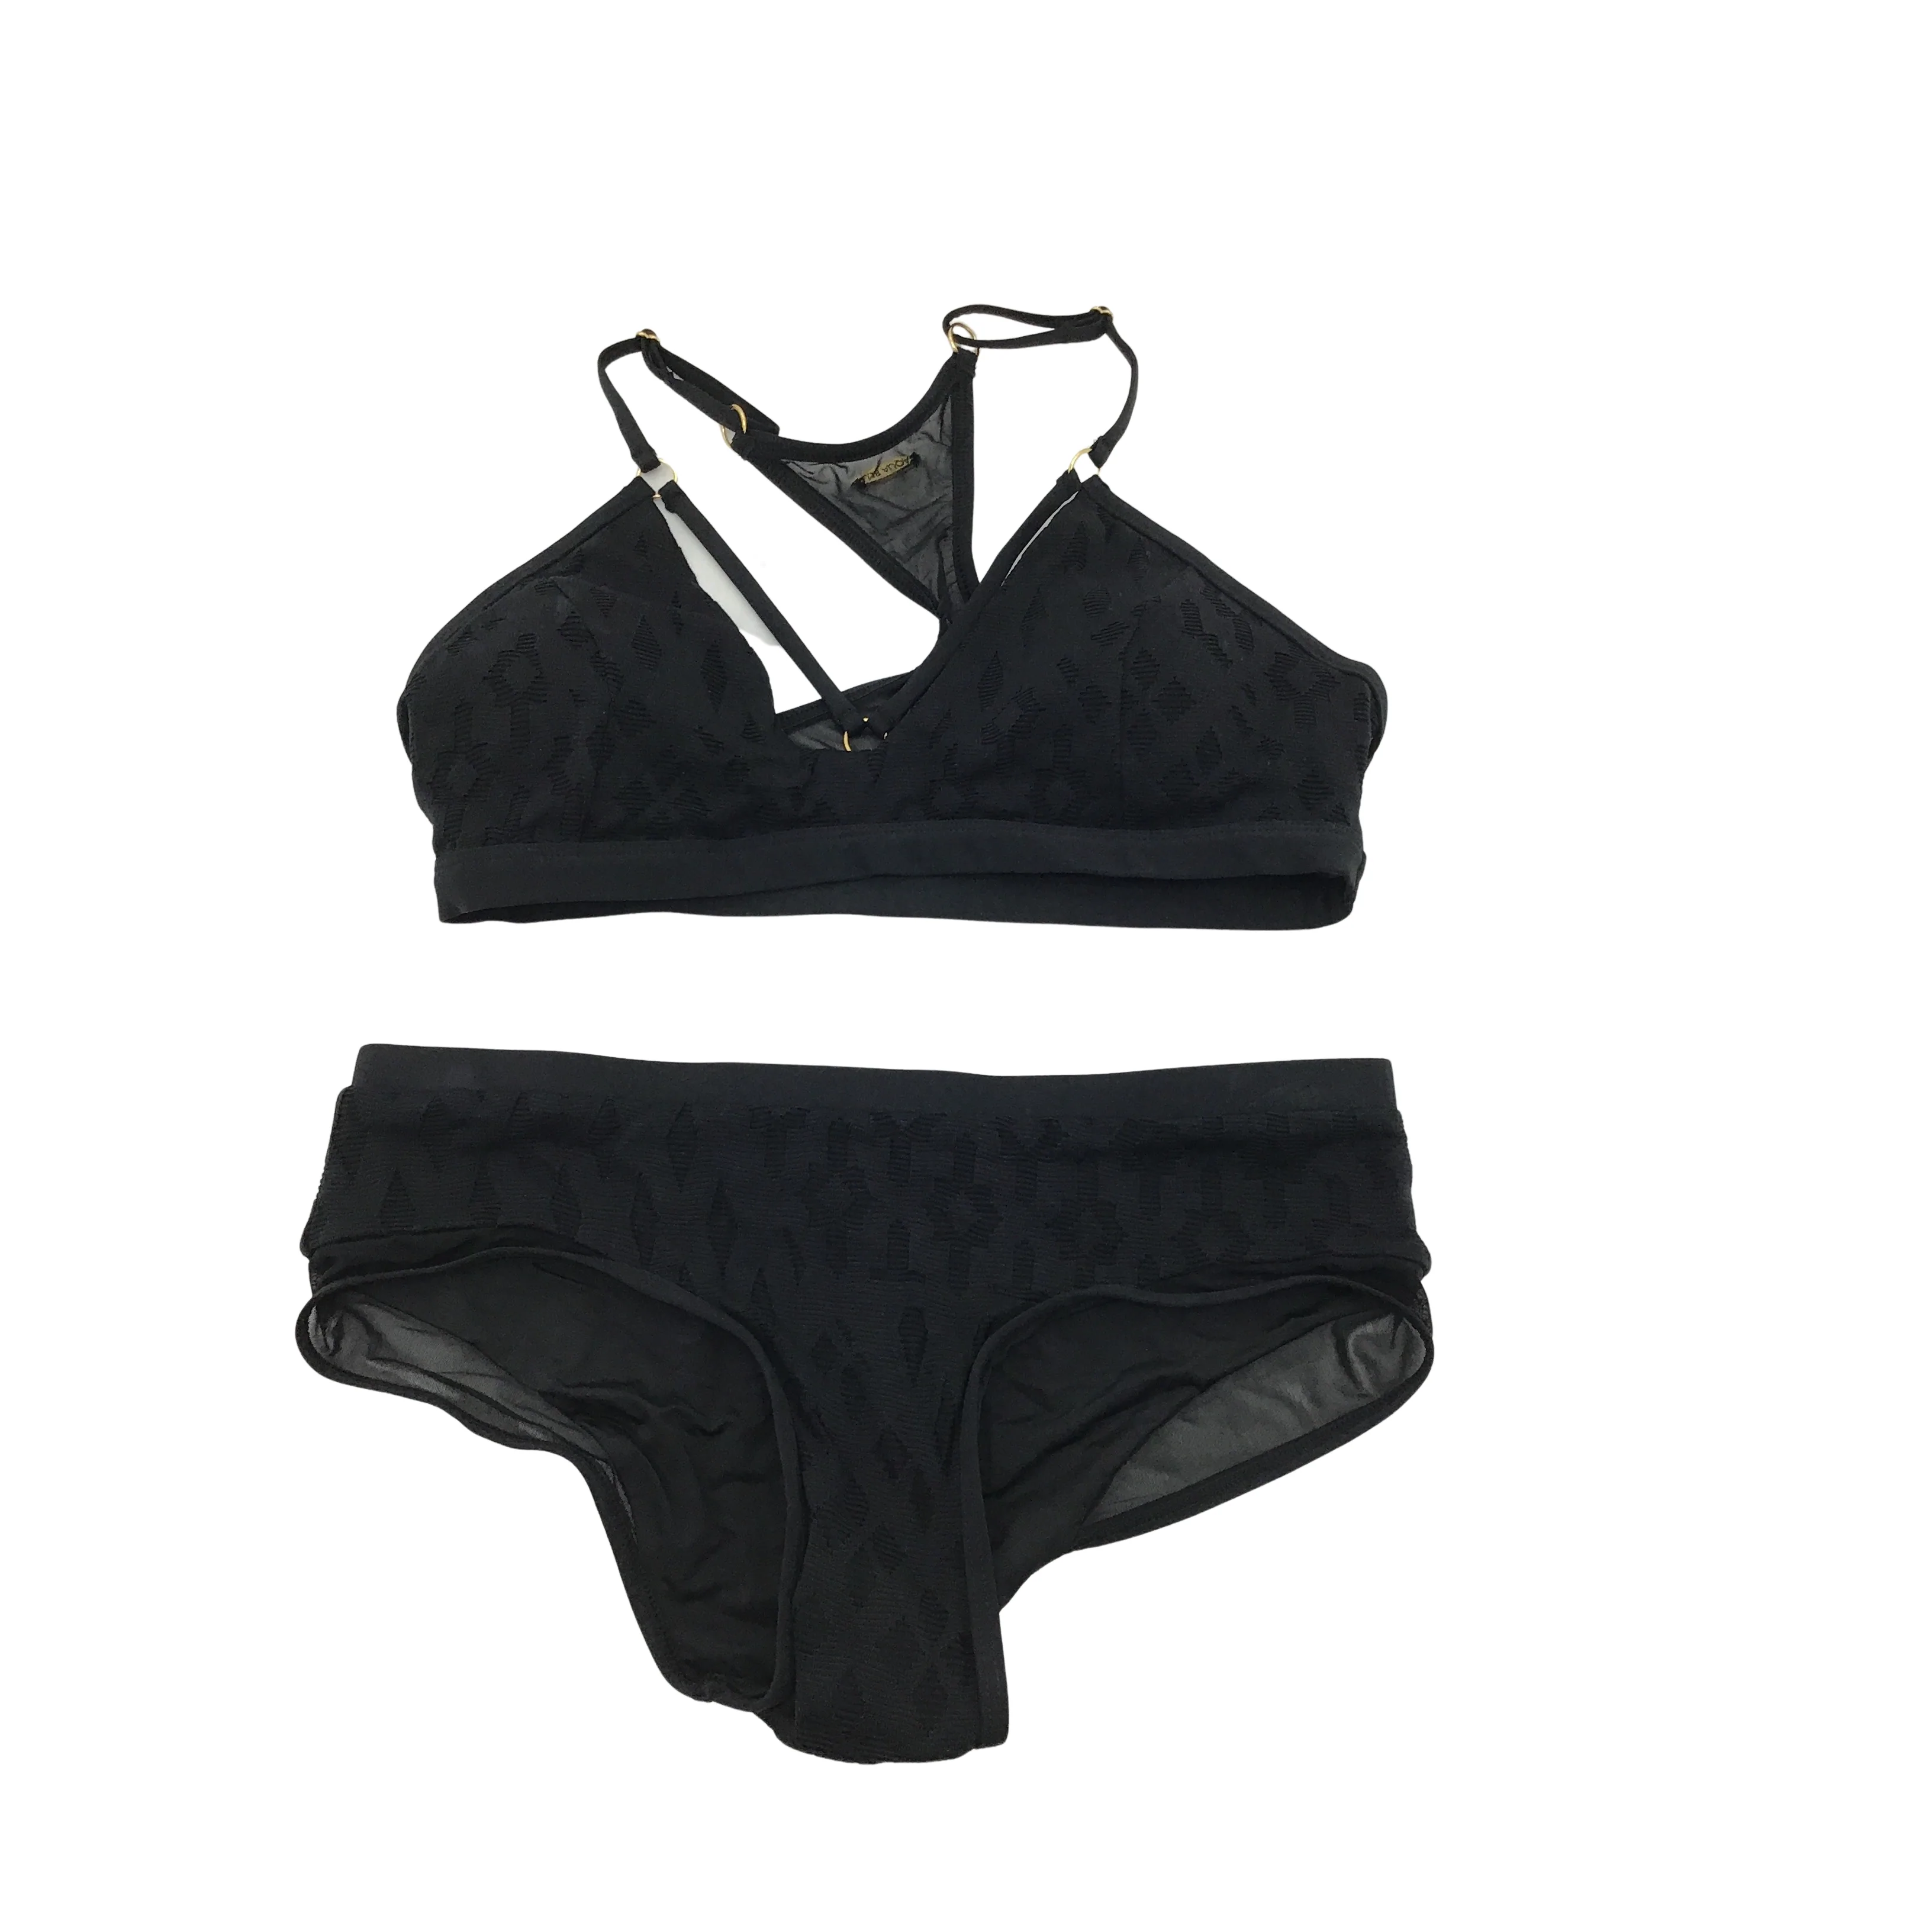 Aqua Blu Women's Bathing Suit / Bikini / Black / Mesh / Lace / Size 10